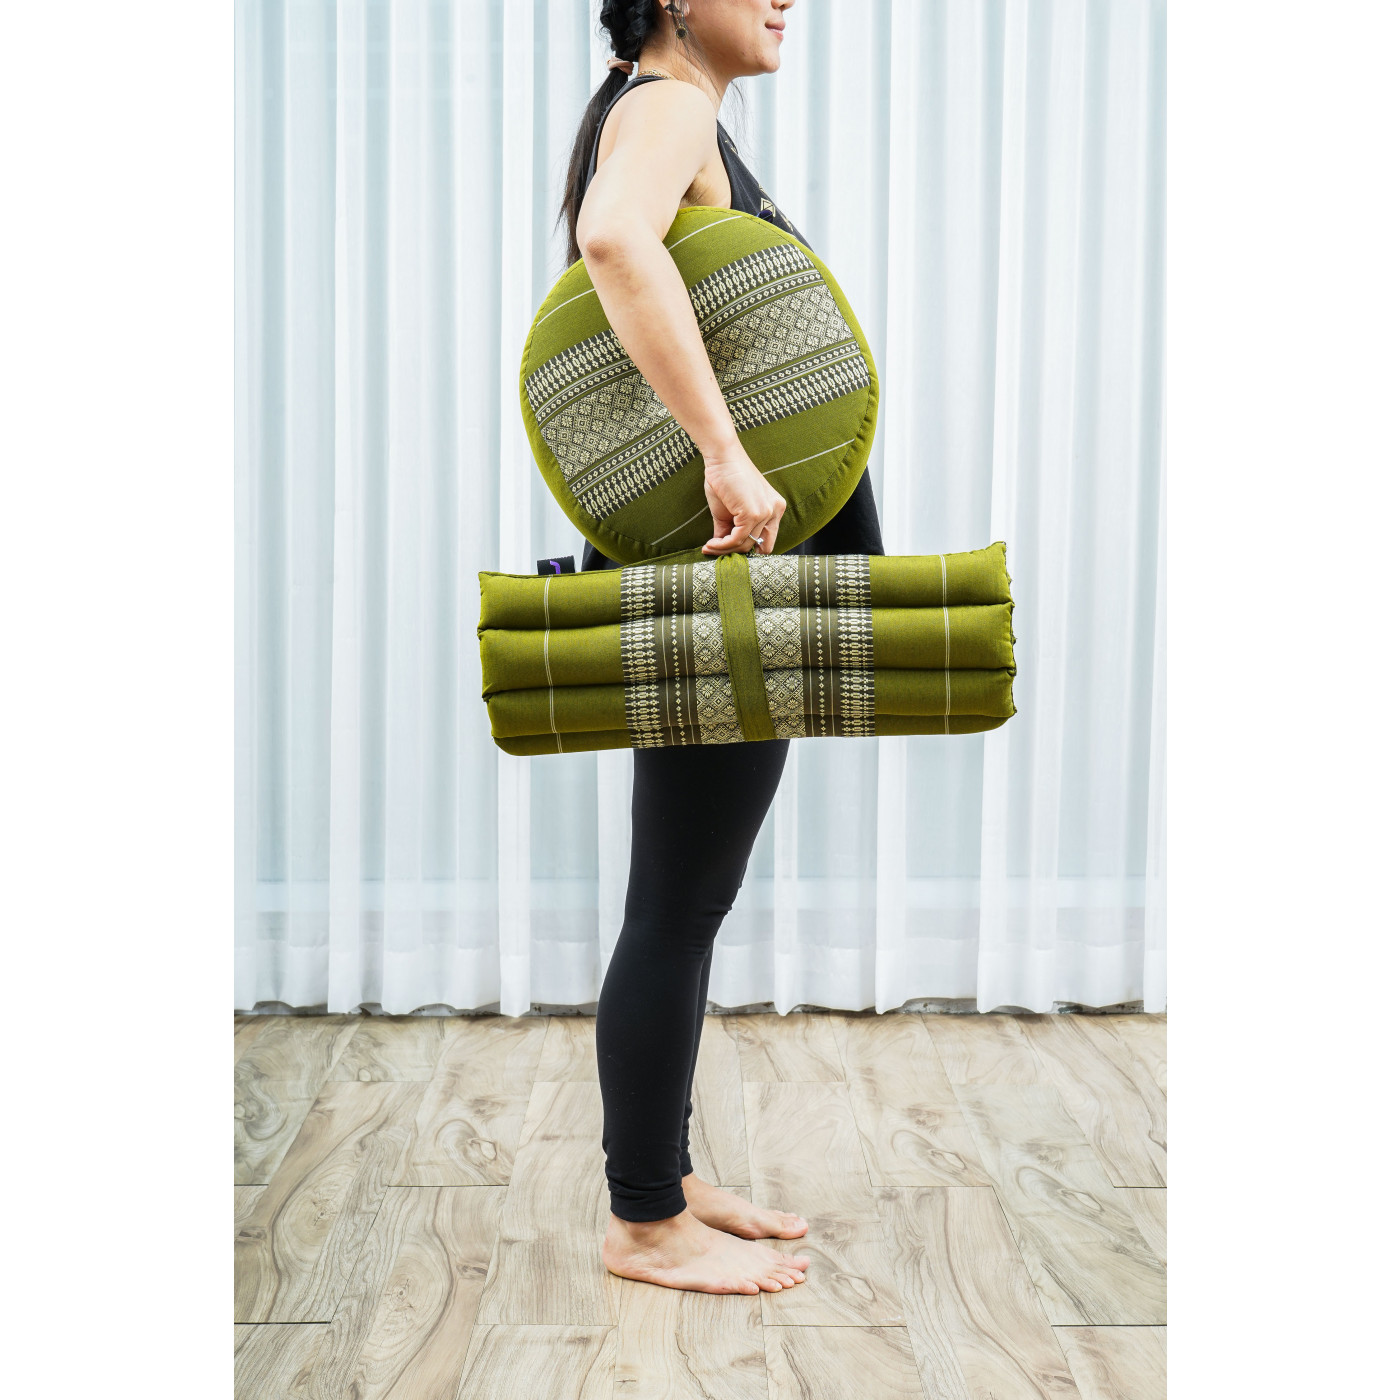 Leewadee Yoga Block – Floor Cushion for Yoga Practice, Meditation